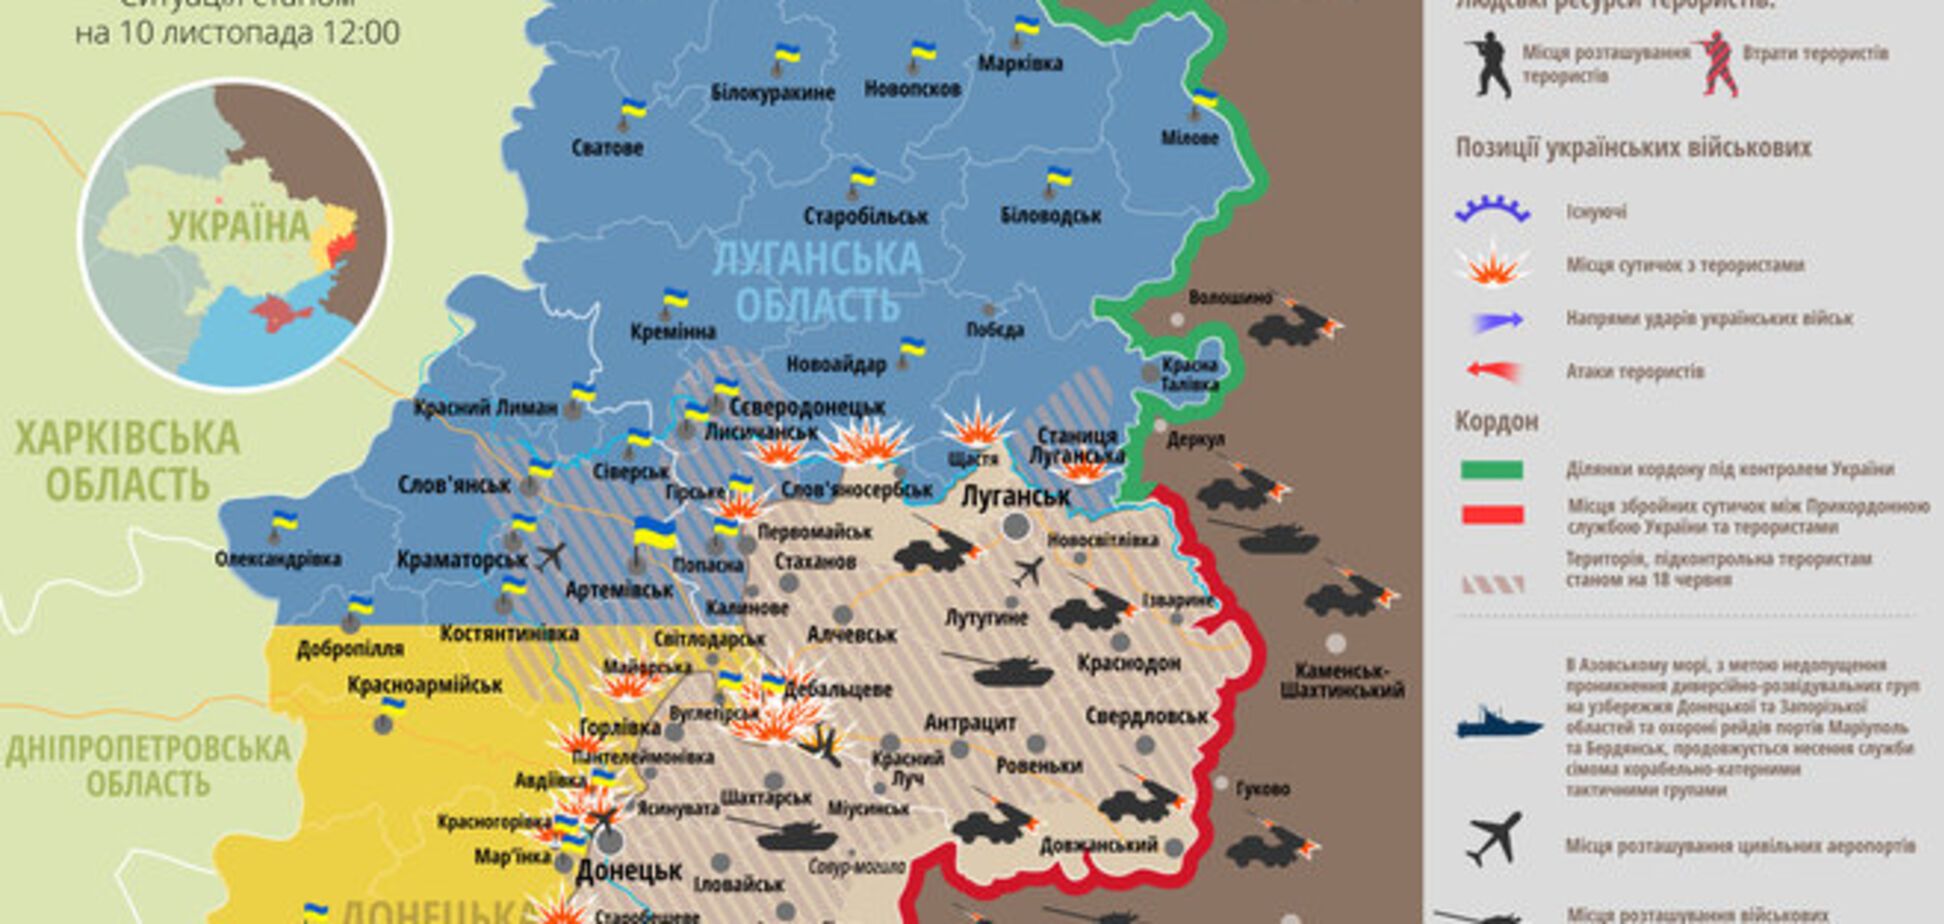 Російсько-терористичні війська концентрують сили вздовж лінії фронту: мапа АТО